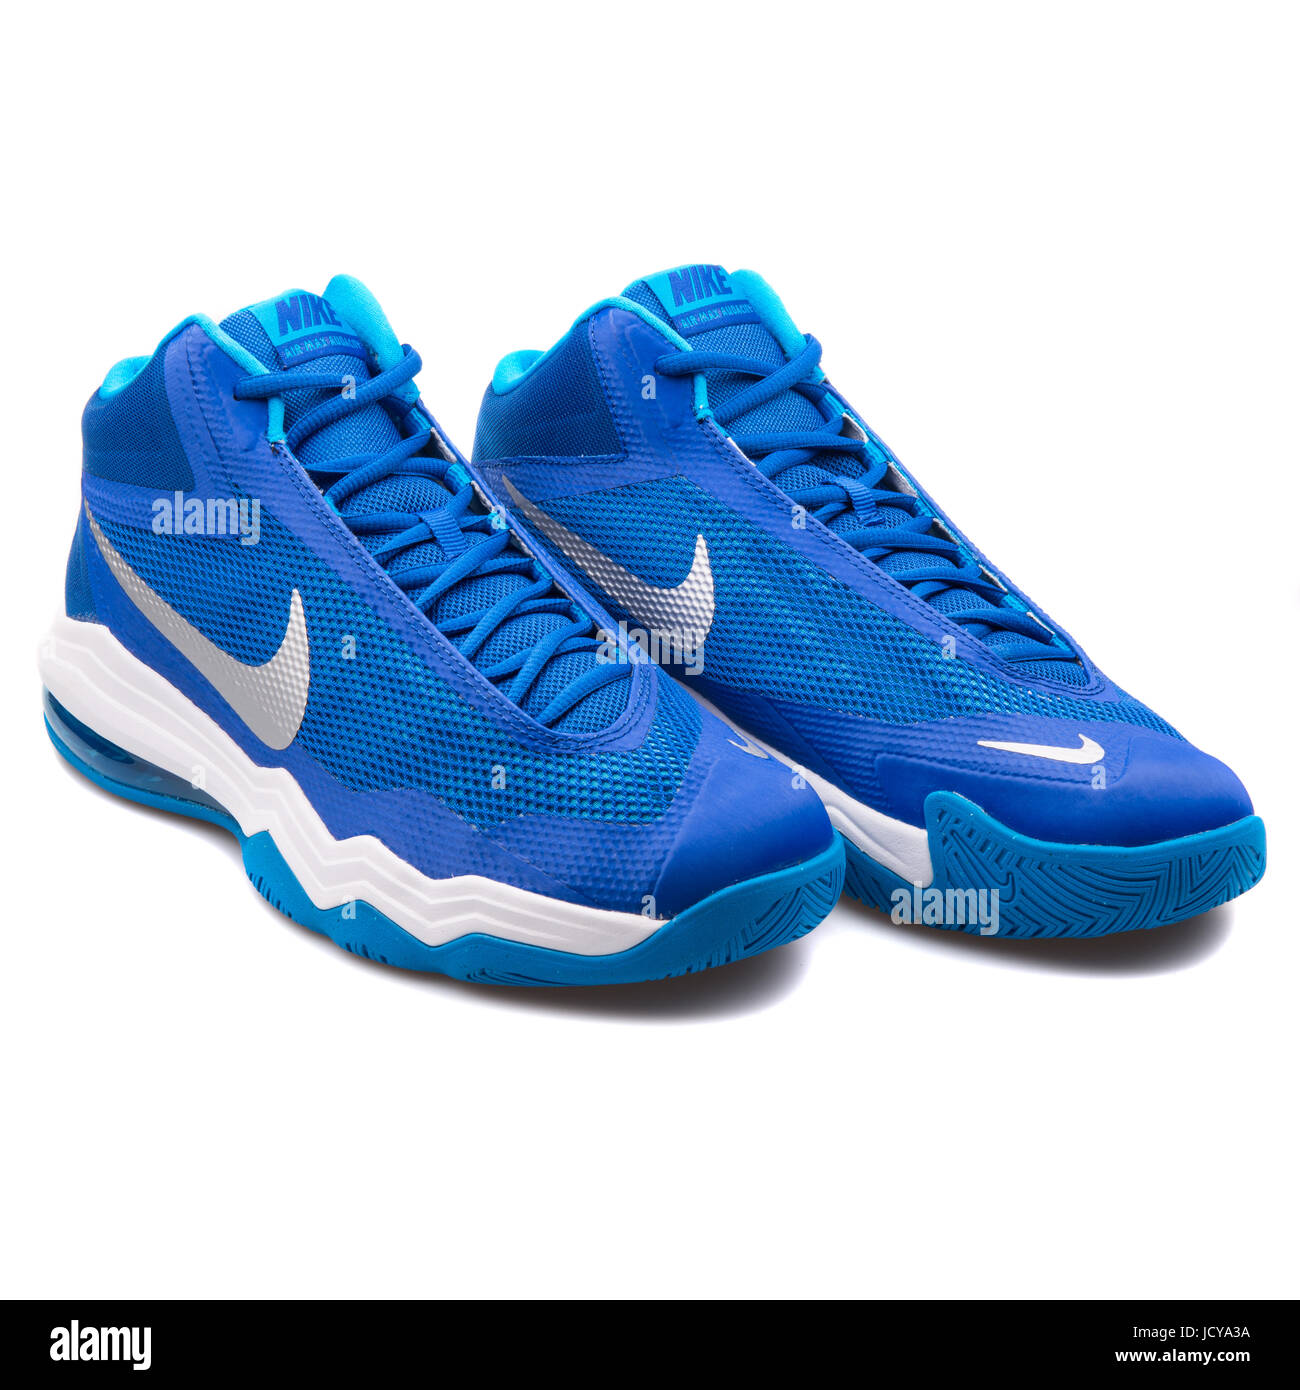 Nike Air Max Audacity TB Unisex azul y blanco zapatillas de baloncesto - 749166-403 Fotografía stock - Alamy